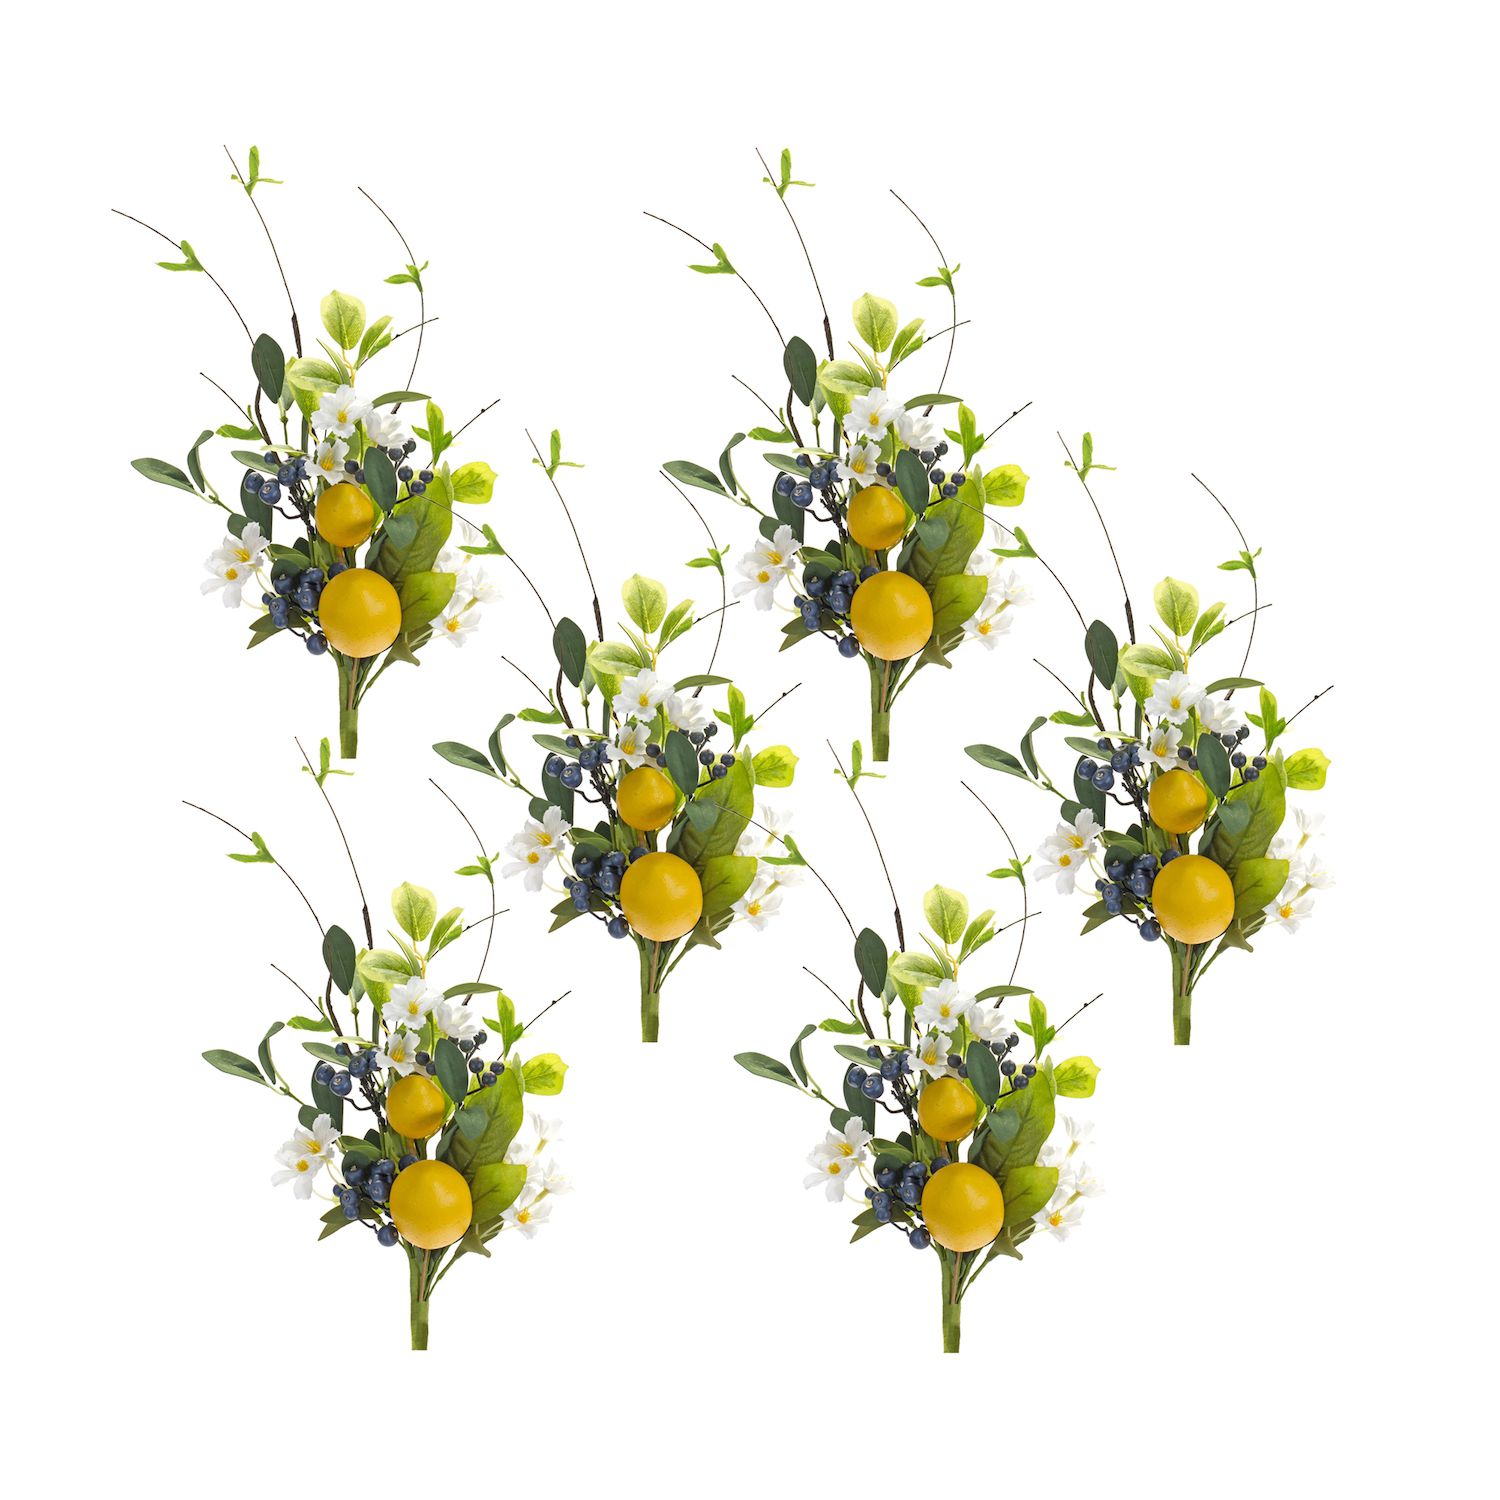 Sentosphere Usa Crystal Flowers Creative Kit